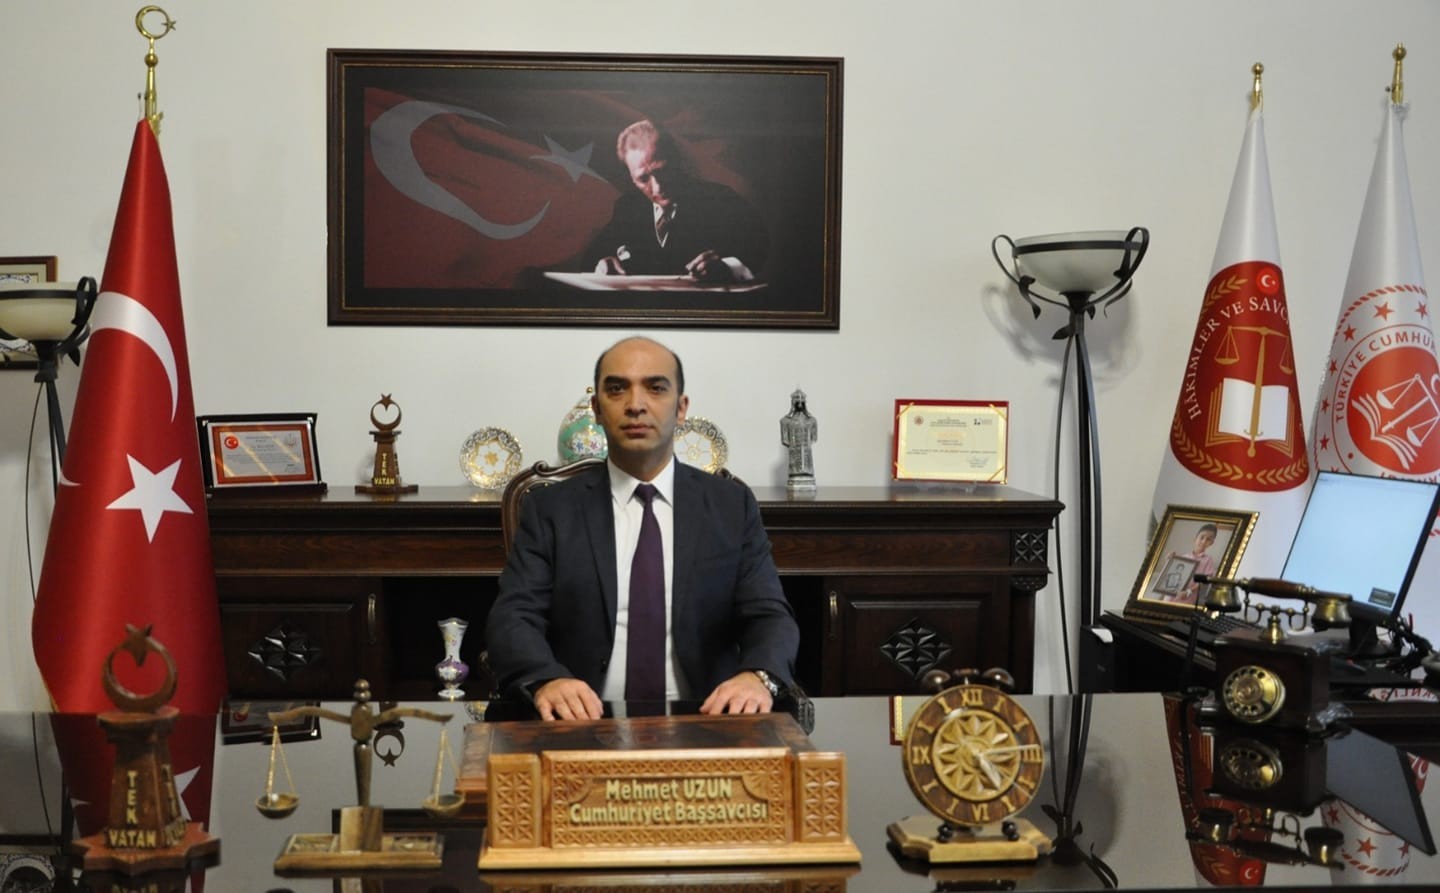 Kütahya Cumhuriyet Başsavcısı Uzun: “Toplumsal barış ve huzurun en güçlü teminatı adalettir”